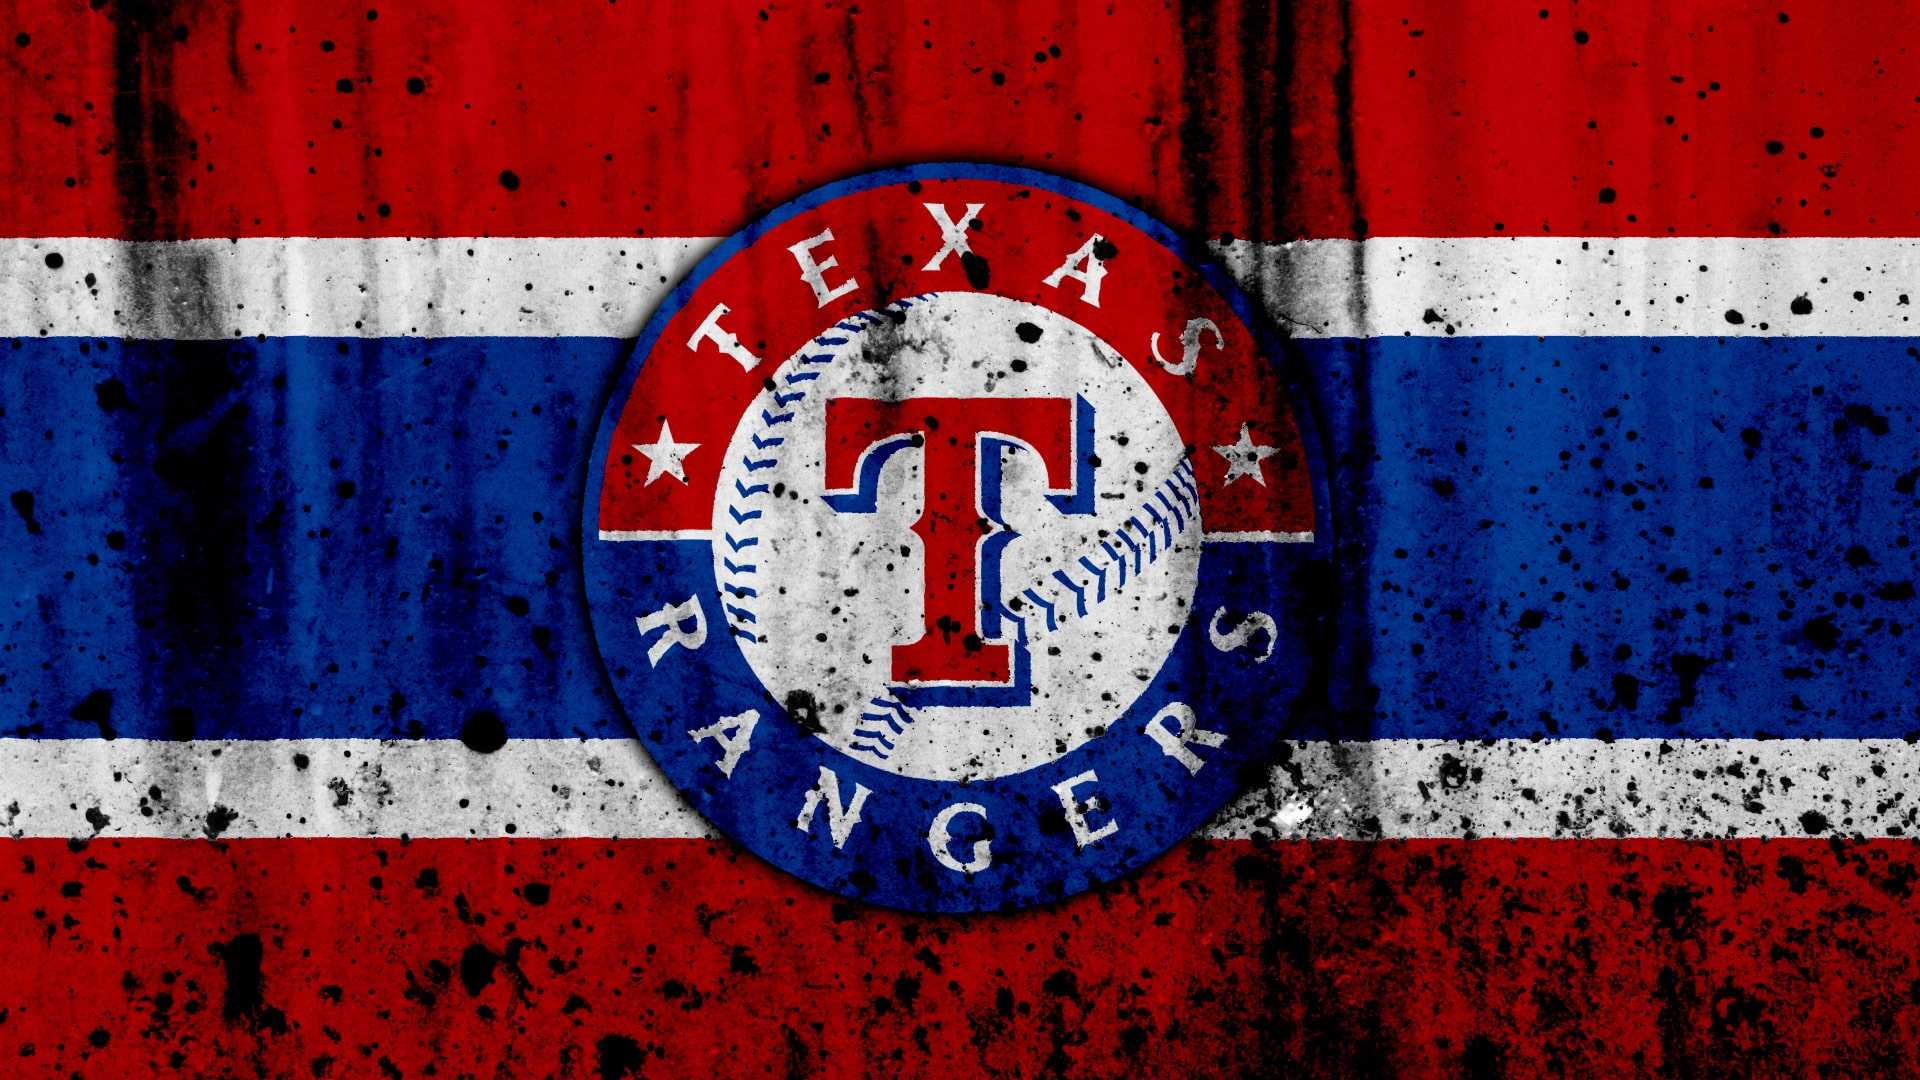 HD Texas Rangers Wallpaper 1